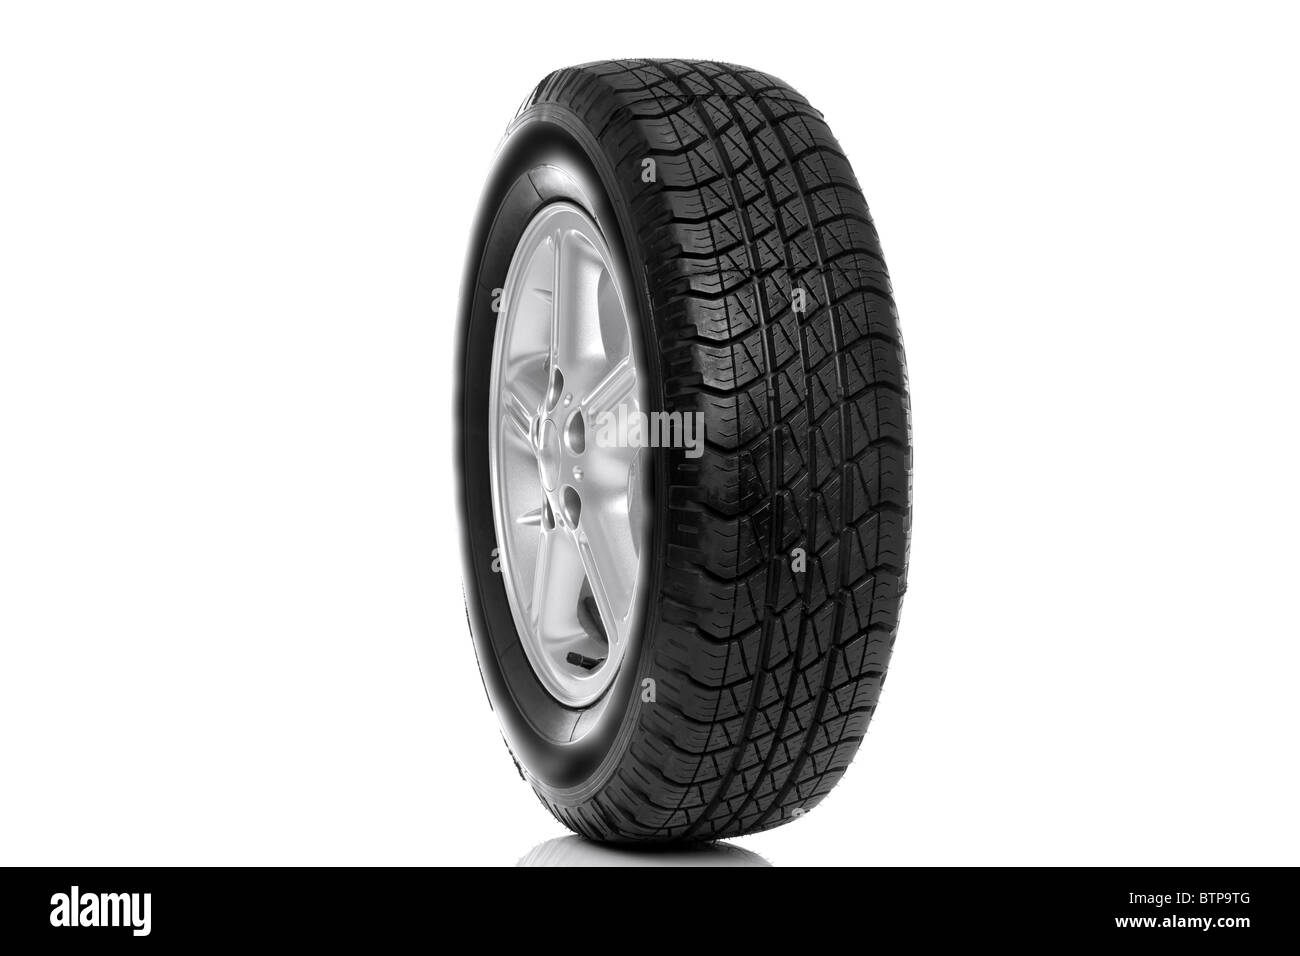 Foto de un neumático de automóvil (neumático) en cinco habló llanta de aluminio aislado sobre un fondo blanco. Foto de stock